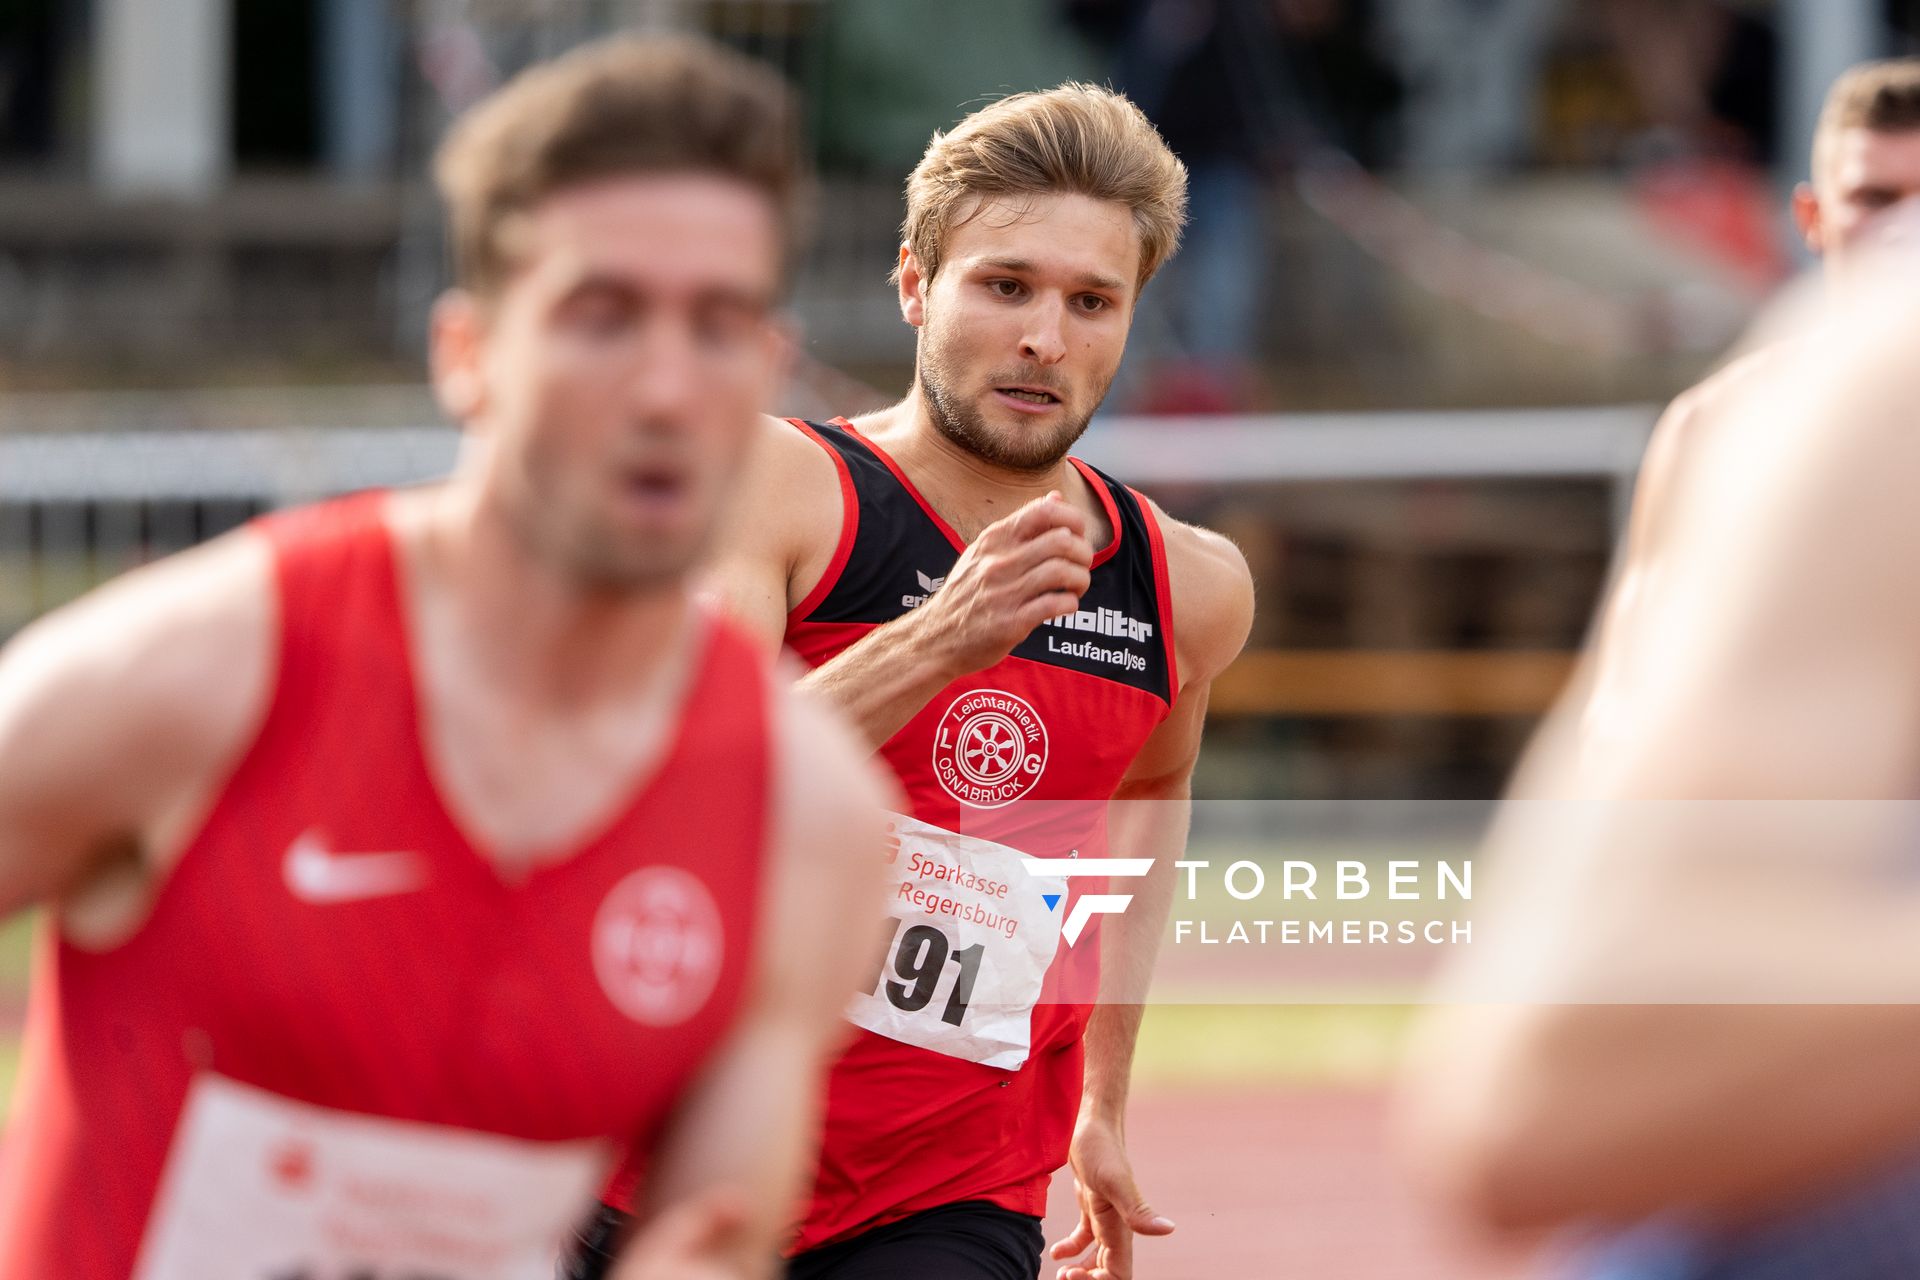 Fabian Dammermann (LG Osnabrueck) ueber 400m am 26.07.2020 waehrend der Sparkassen Gala in Regensburg